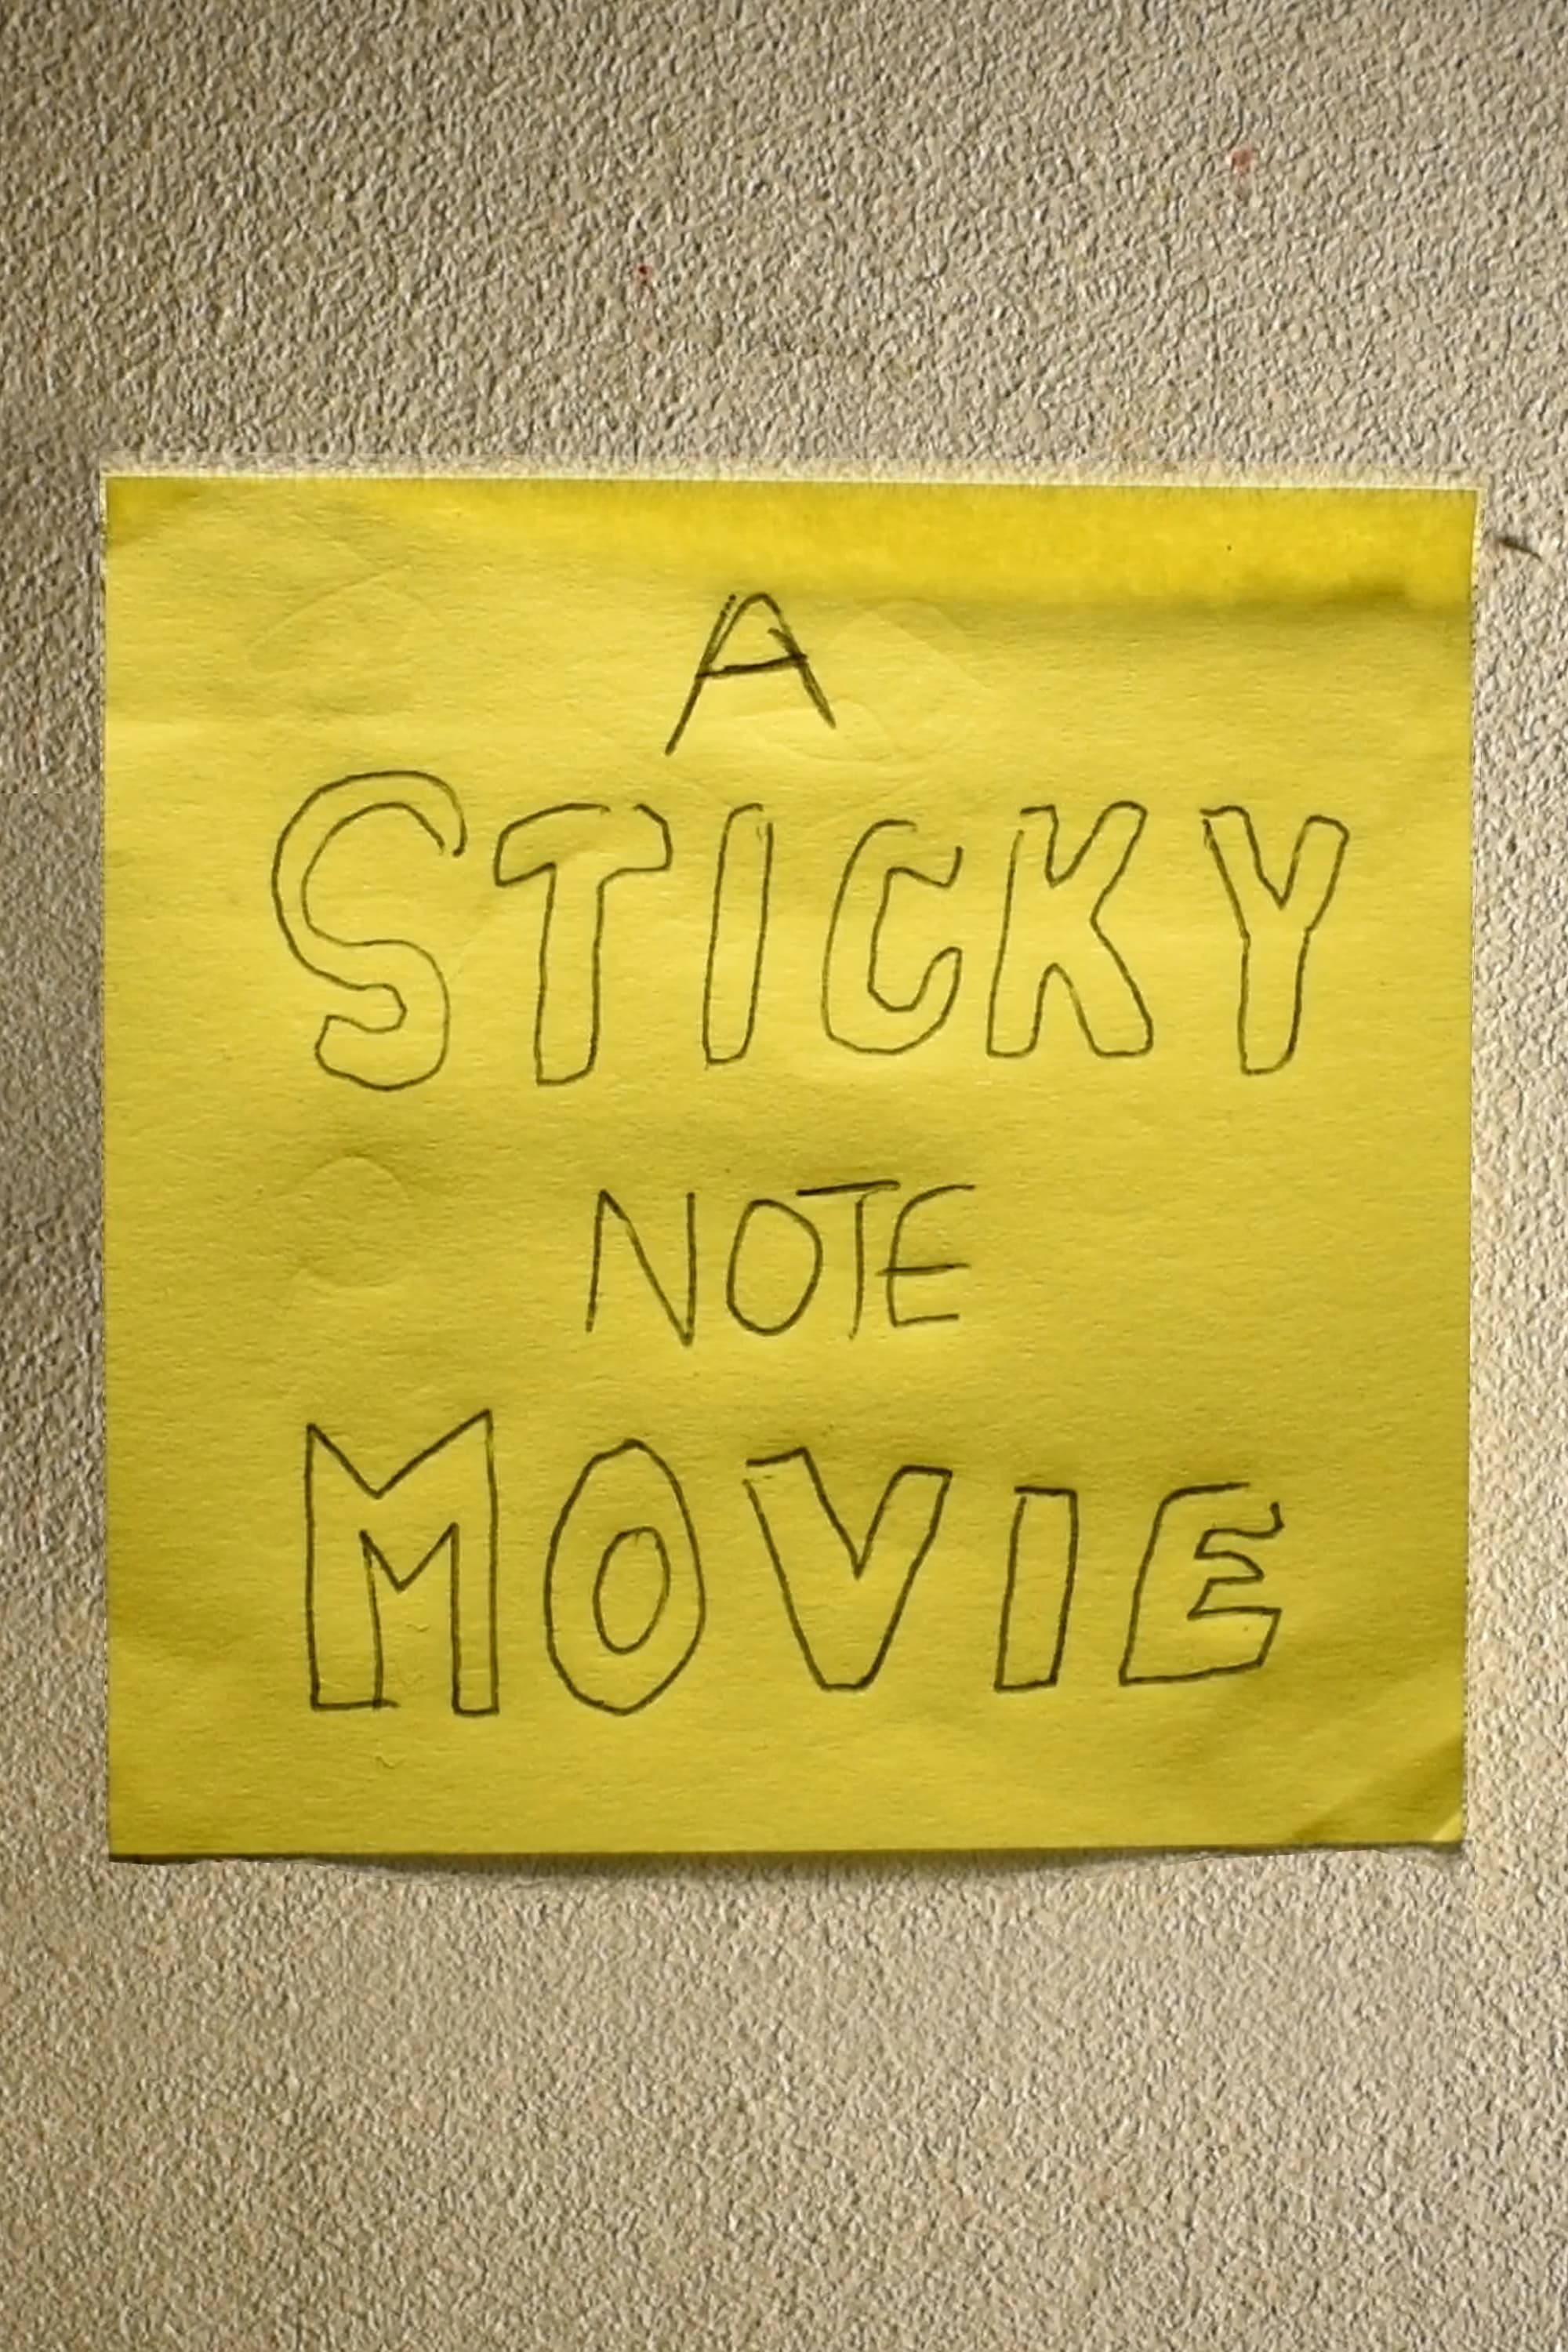 A sticky note movie